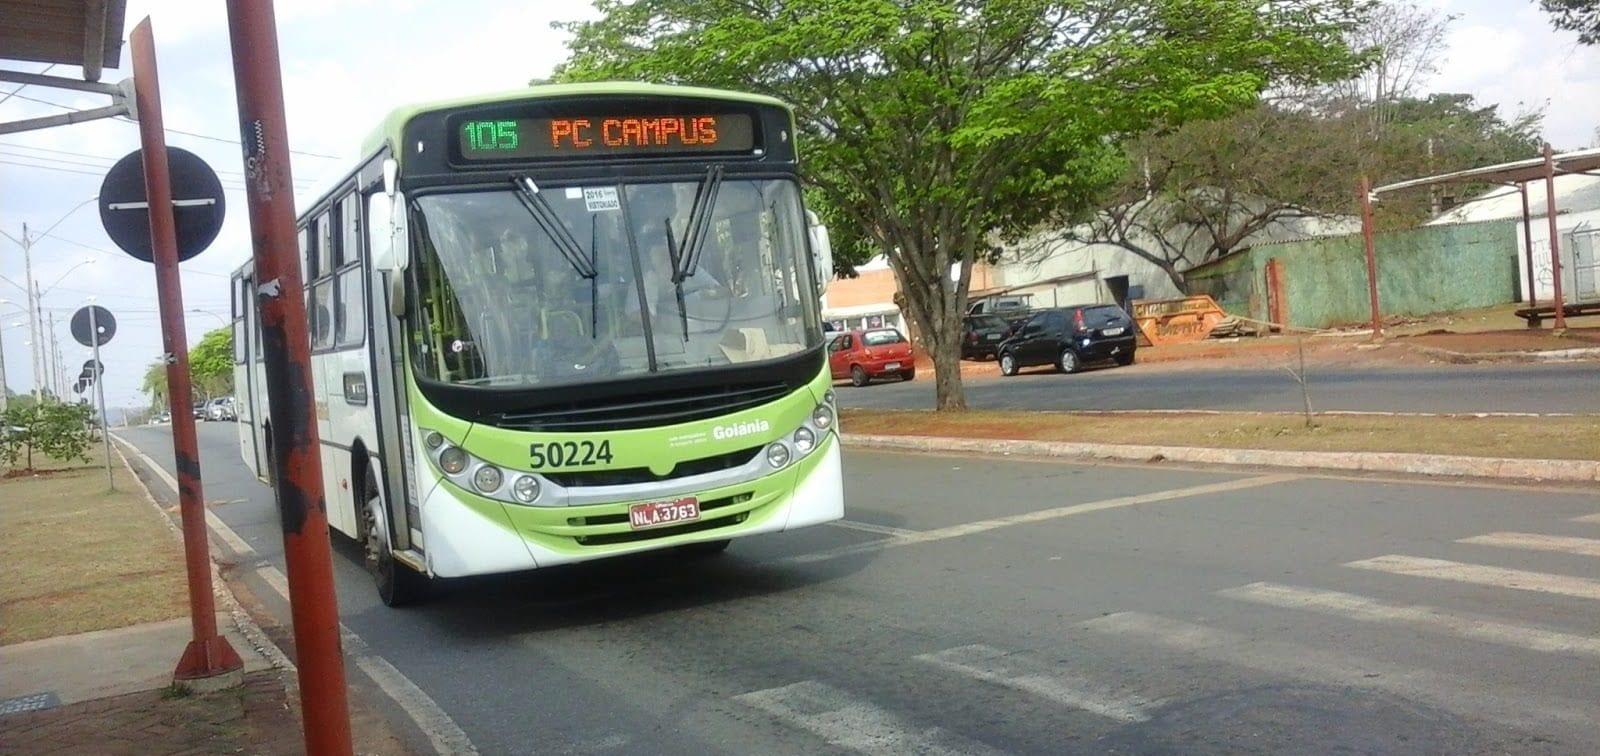 Cadastro e recadastro do Passe Livre Estudantil começa nesta sexta-feira em Goiás